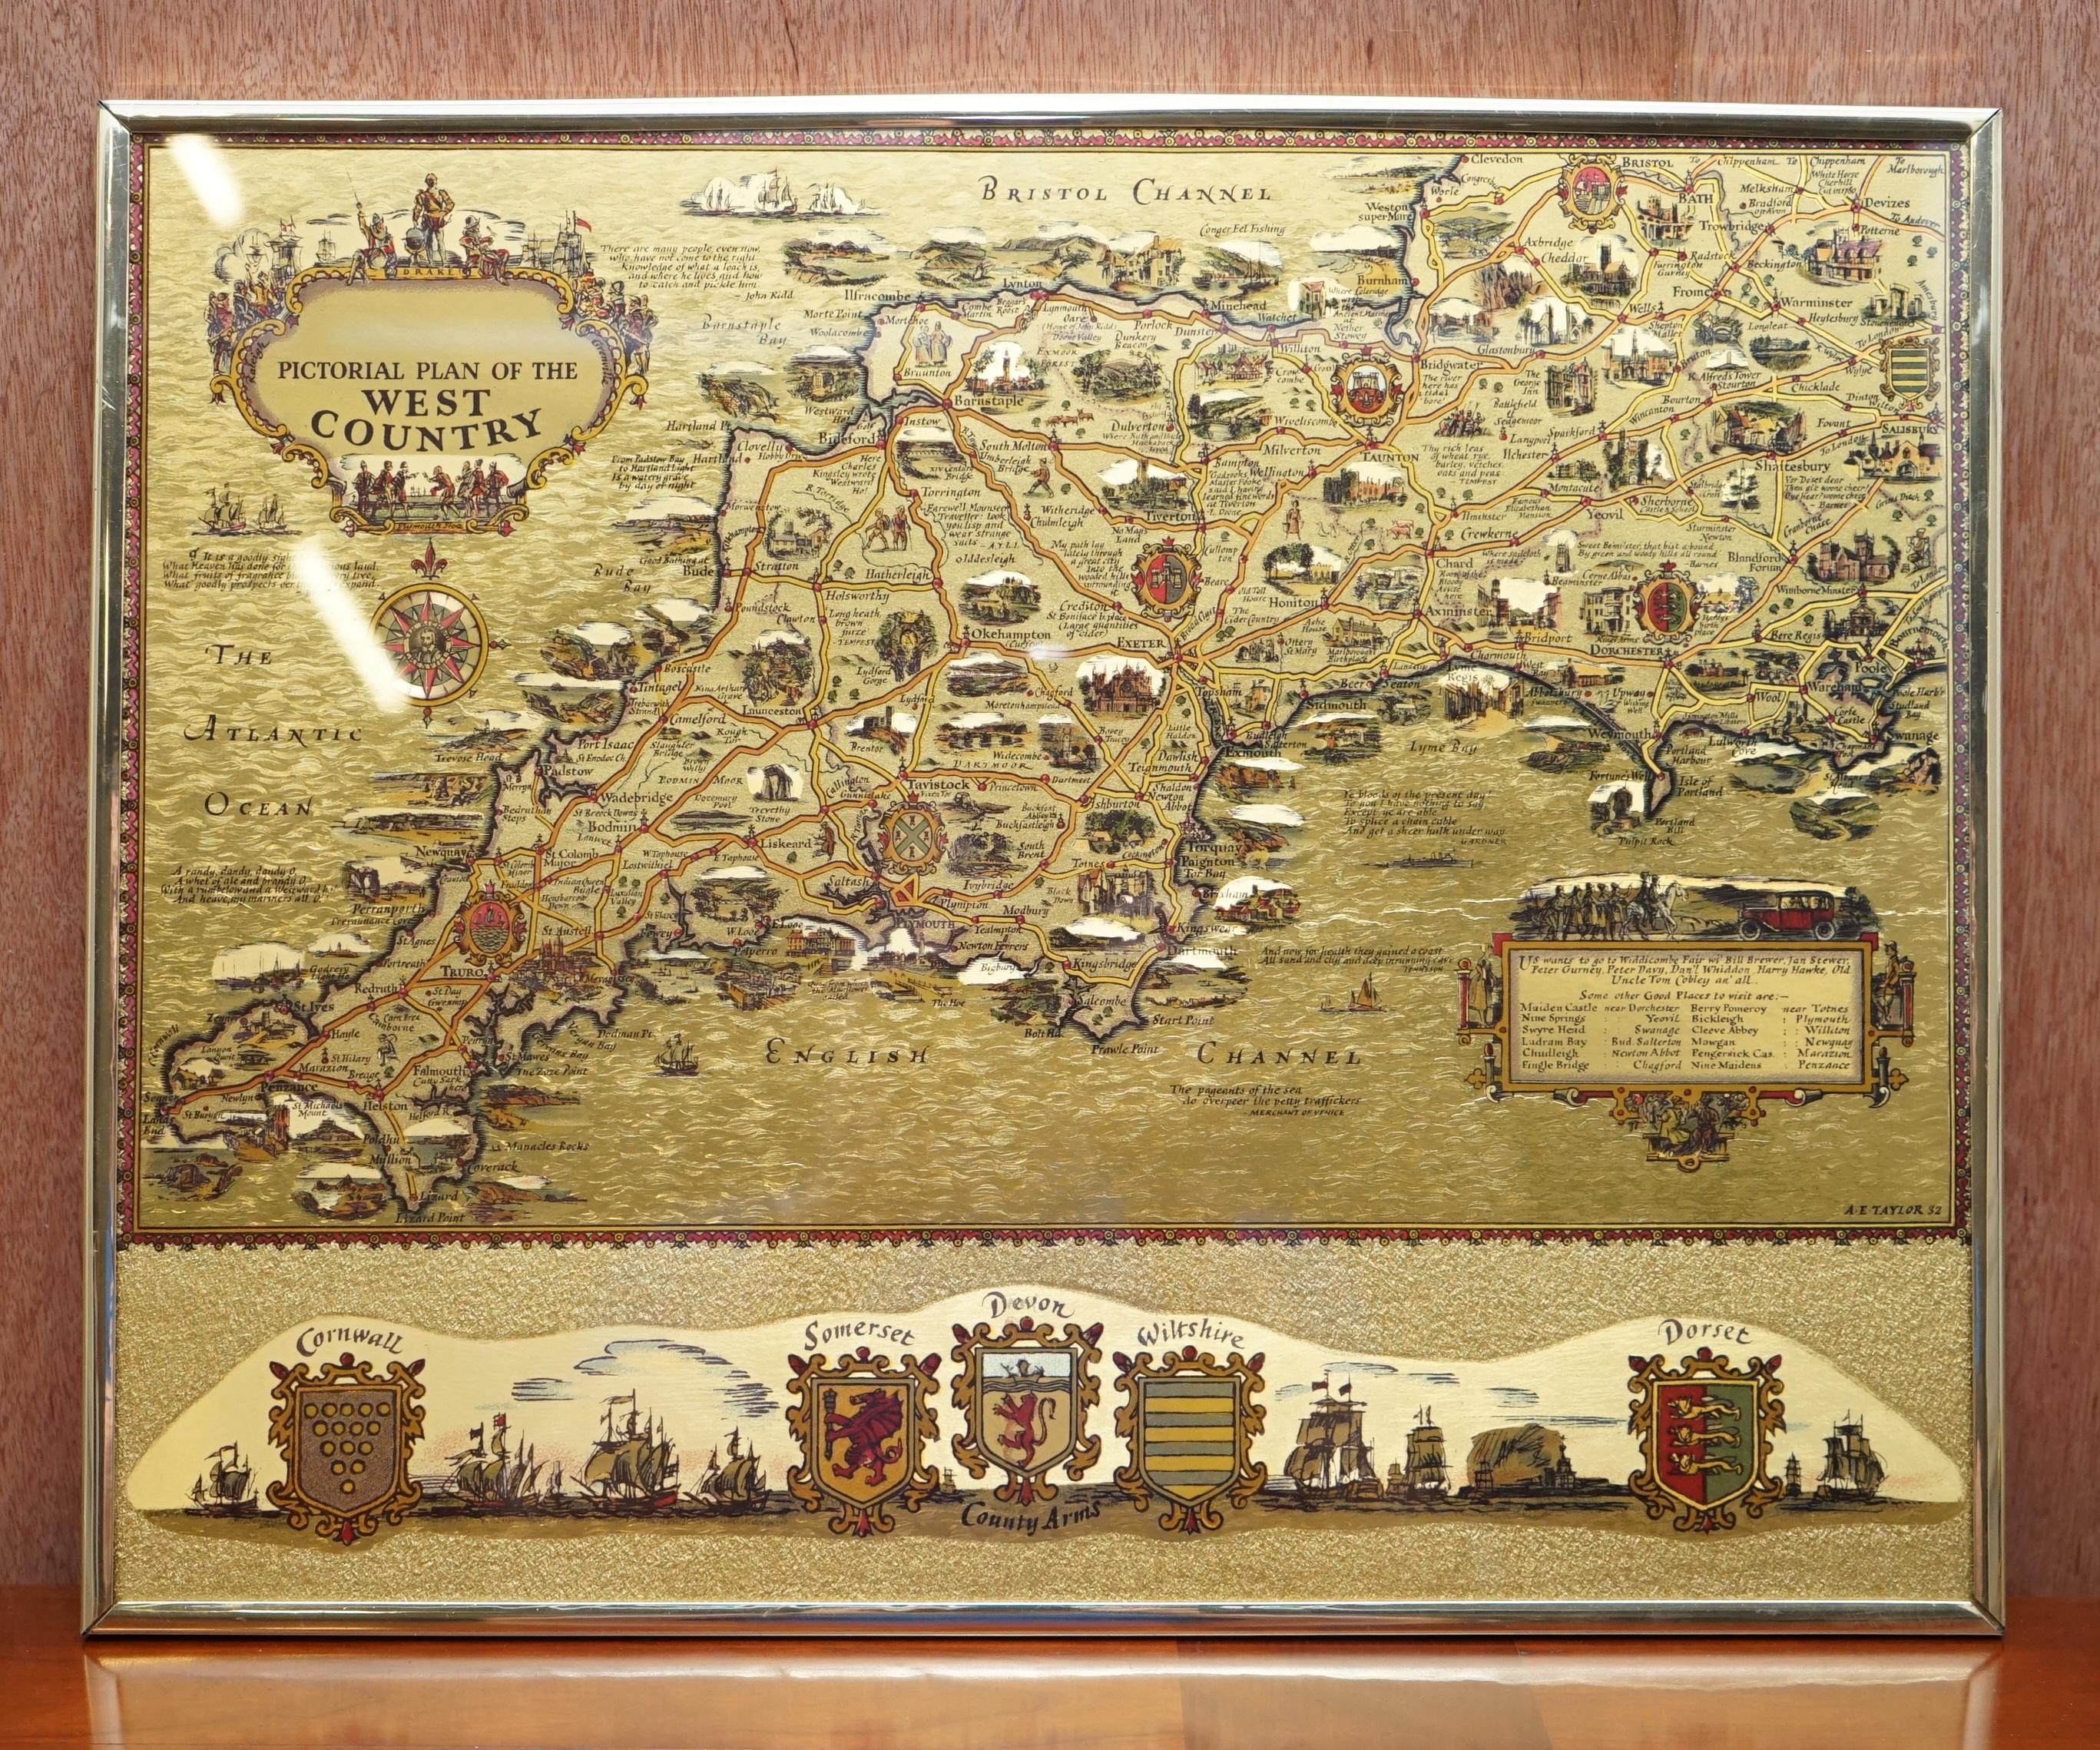 Nous sommes ravis d'offrir à la vente cette belle carte picturale de l'Ouest de l'Angleterre, gravée à la feuille d'or.

Il s'agit d'une pièce très intéressante et décorative, qui s'intègre parfaitement dans n'importe quel environnement. Il s'agit